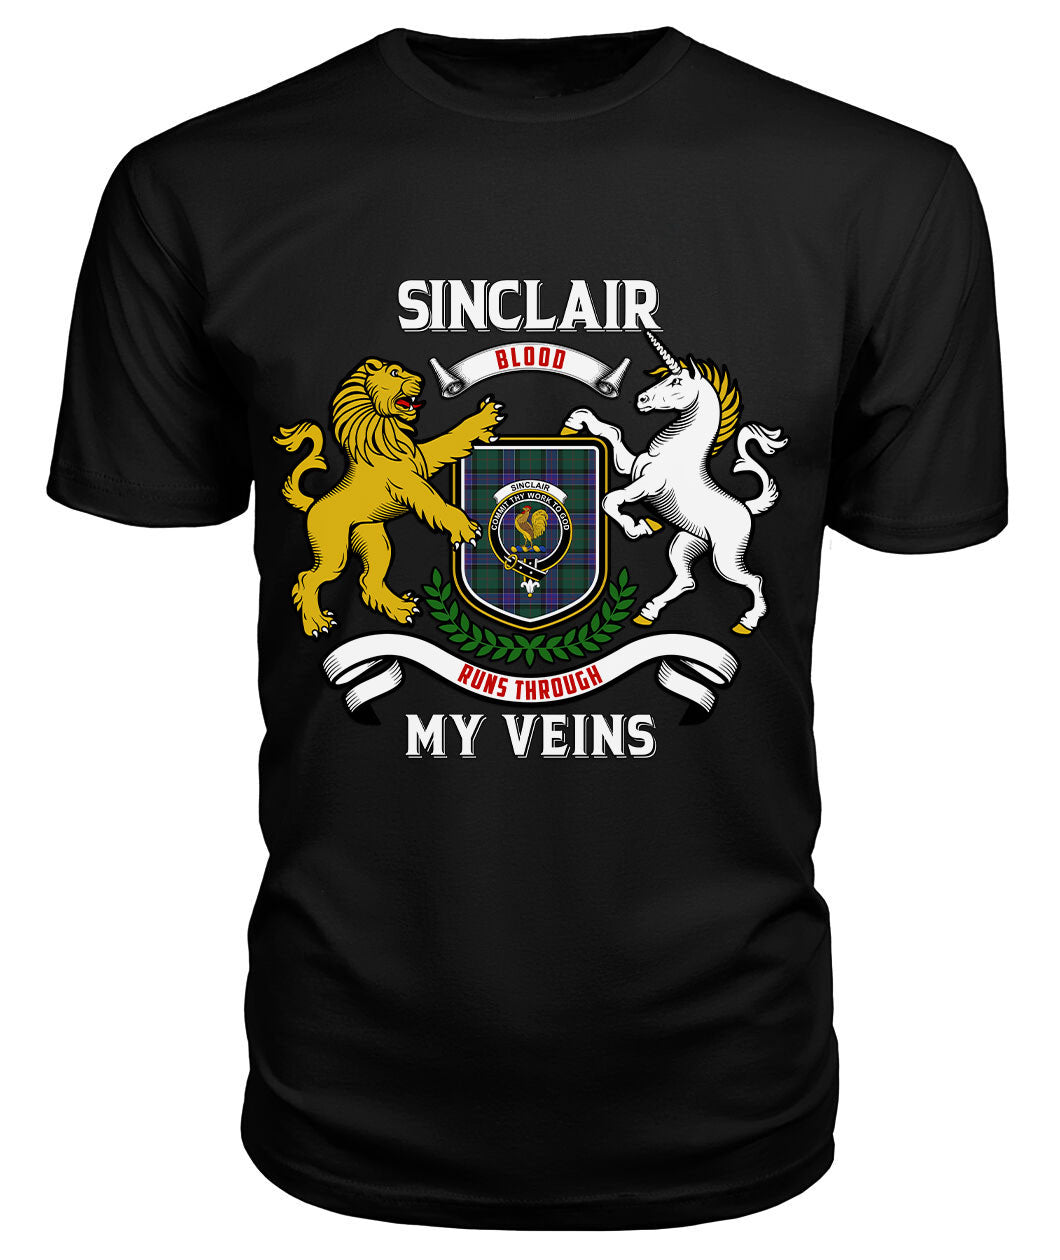 Sinclair Hunting Modern Tartan Crest 2D T-shirt - Blood Runs Through My Veins Style